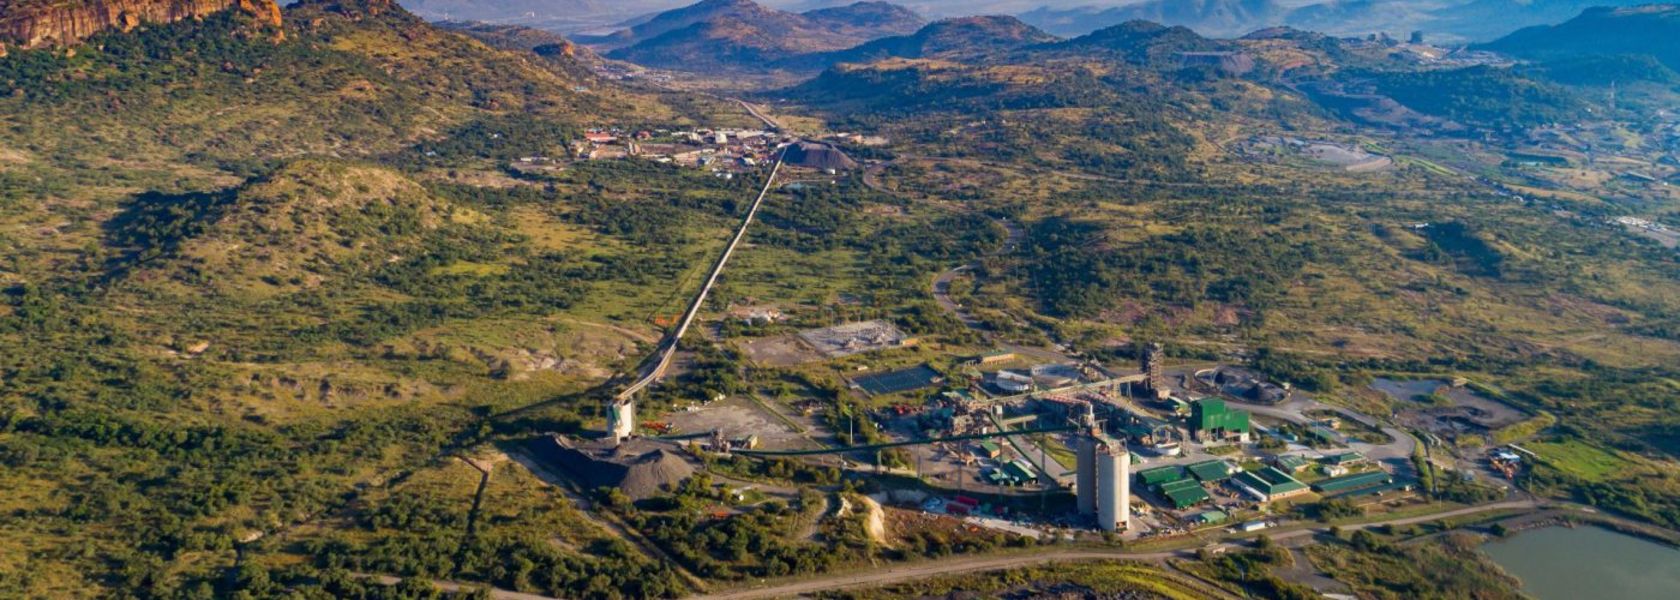 Uma das sedes de mineração da AngloAmerican – principal empresa de mineração atuante na África do Sul.